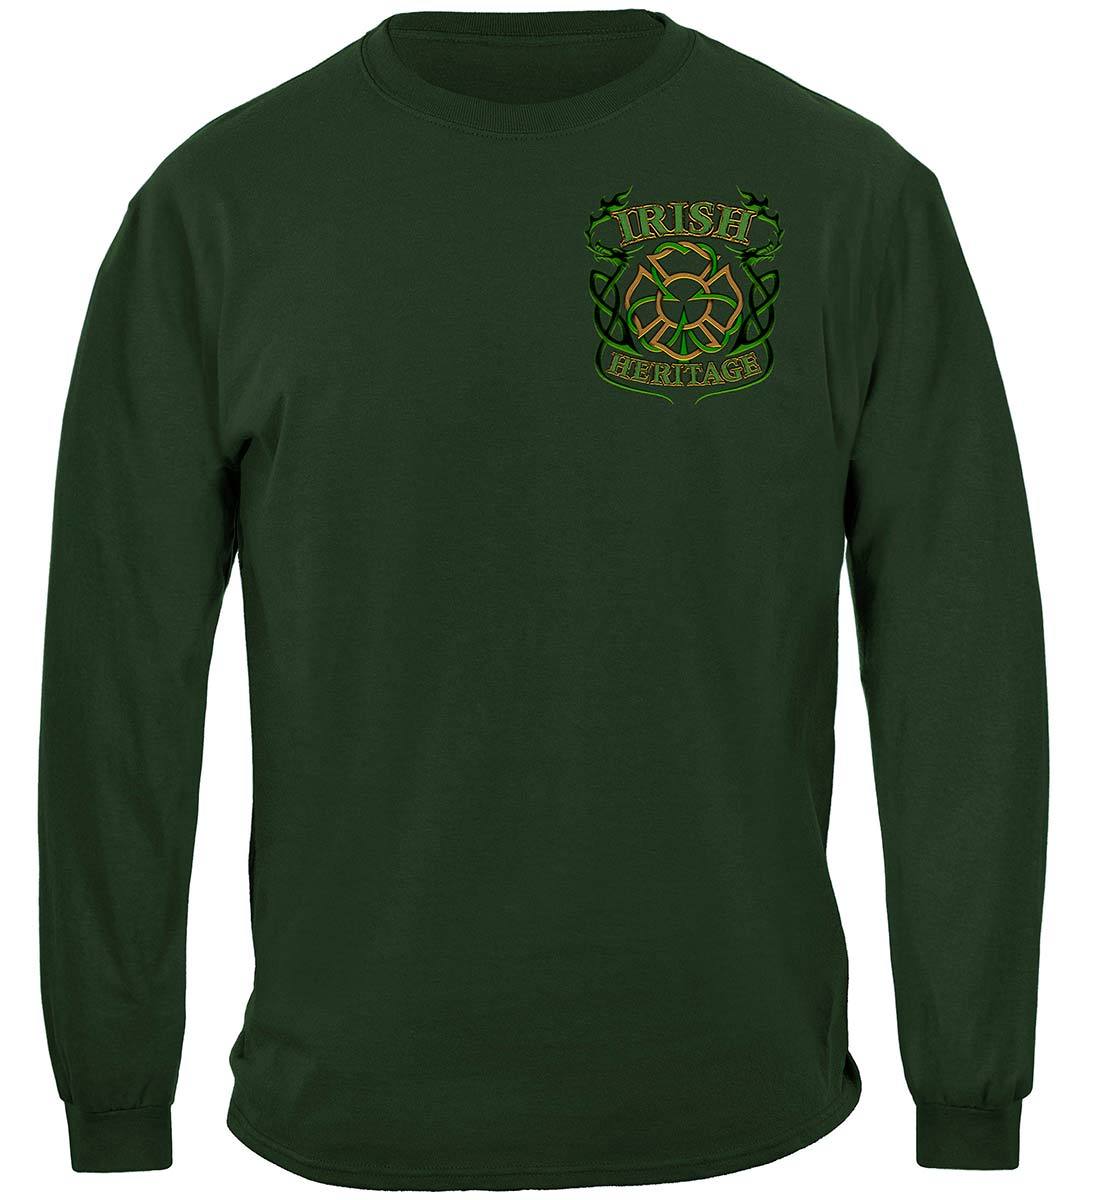 Irish Firefighter Premium T-Shirt